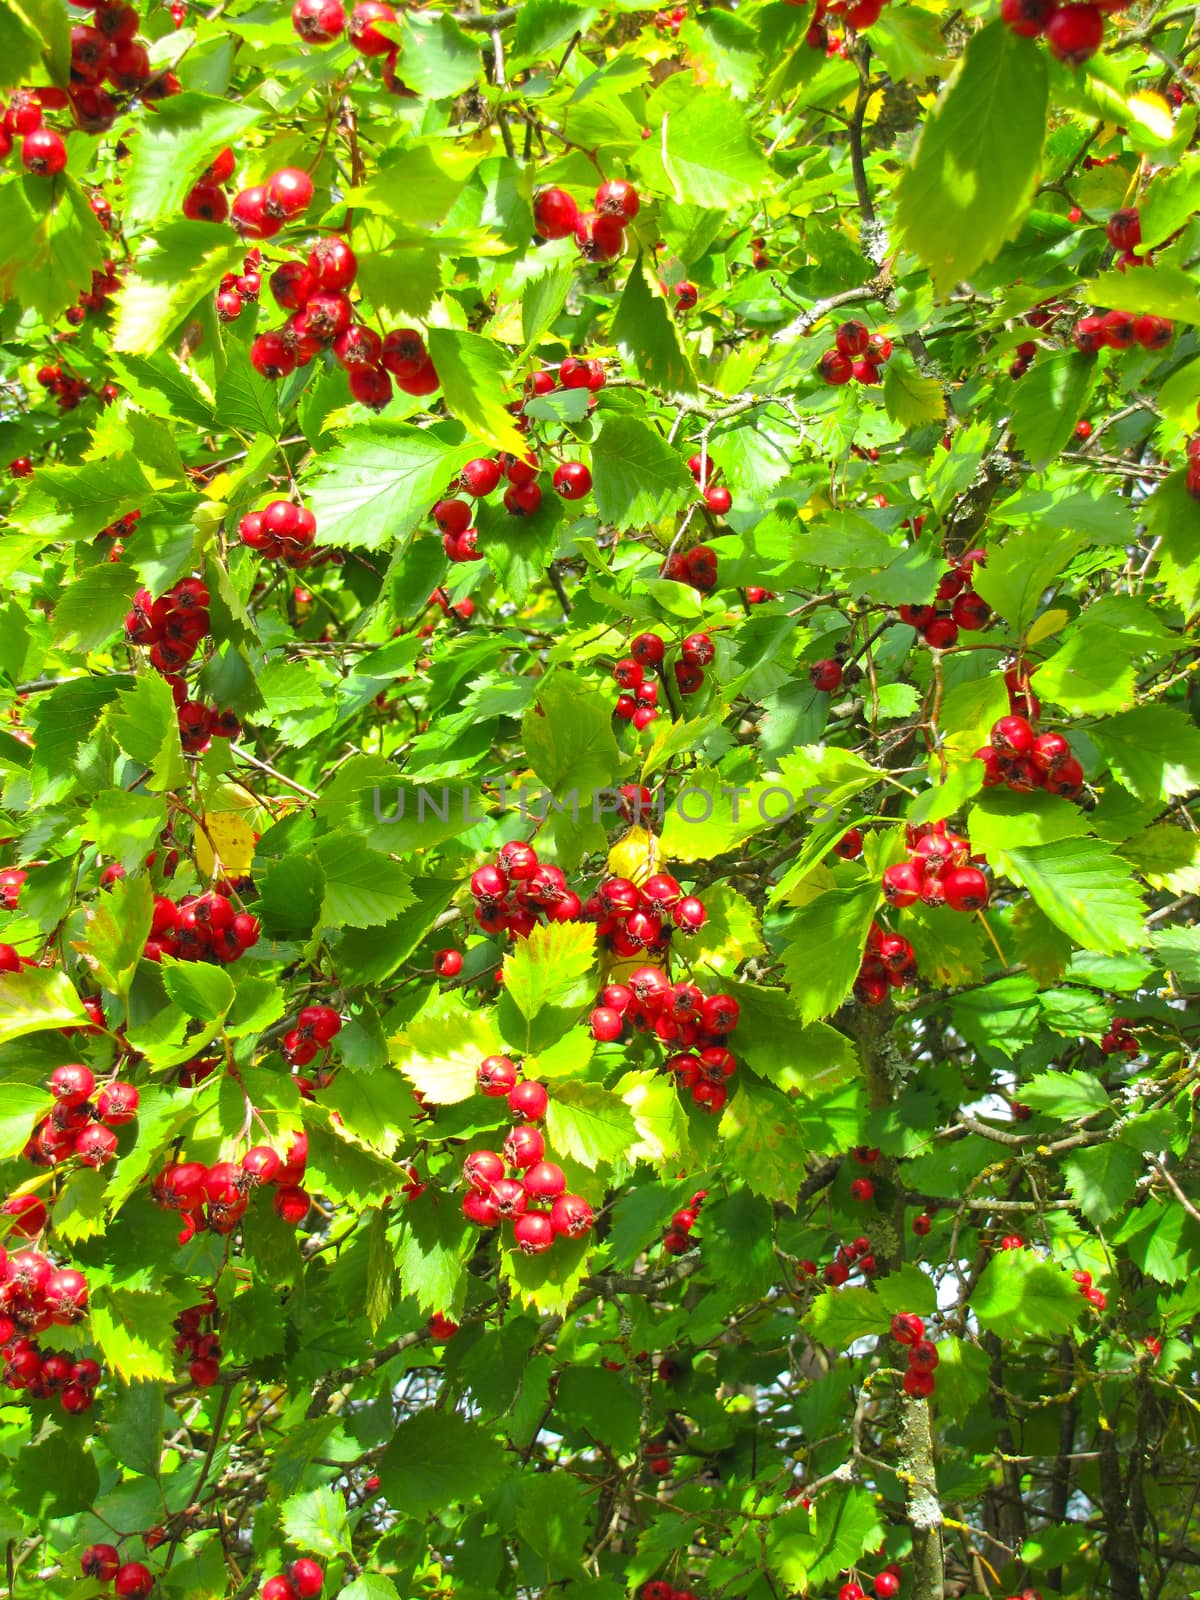 Bush red berries by rodakm